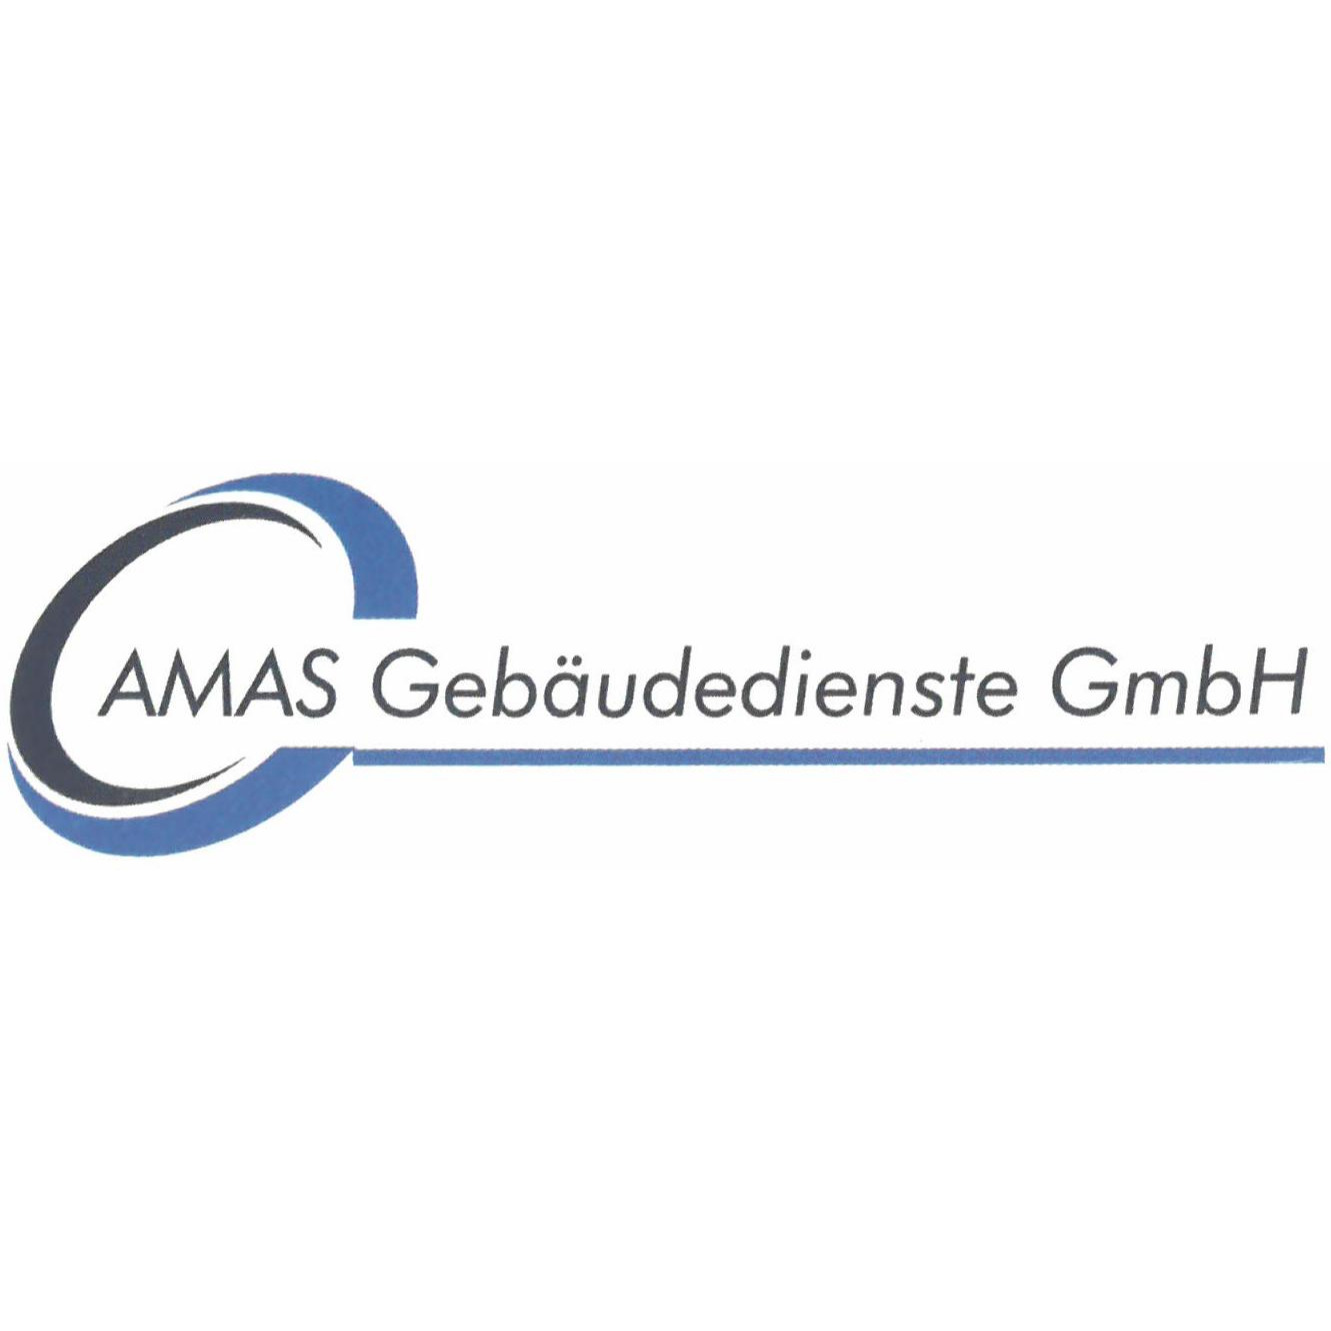 AMAS Gebäudedienste GmbH